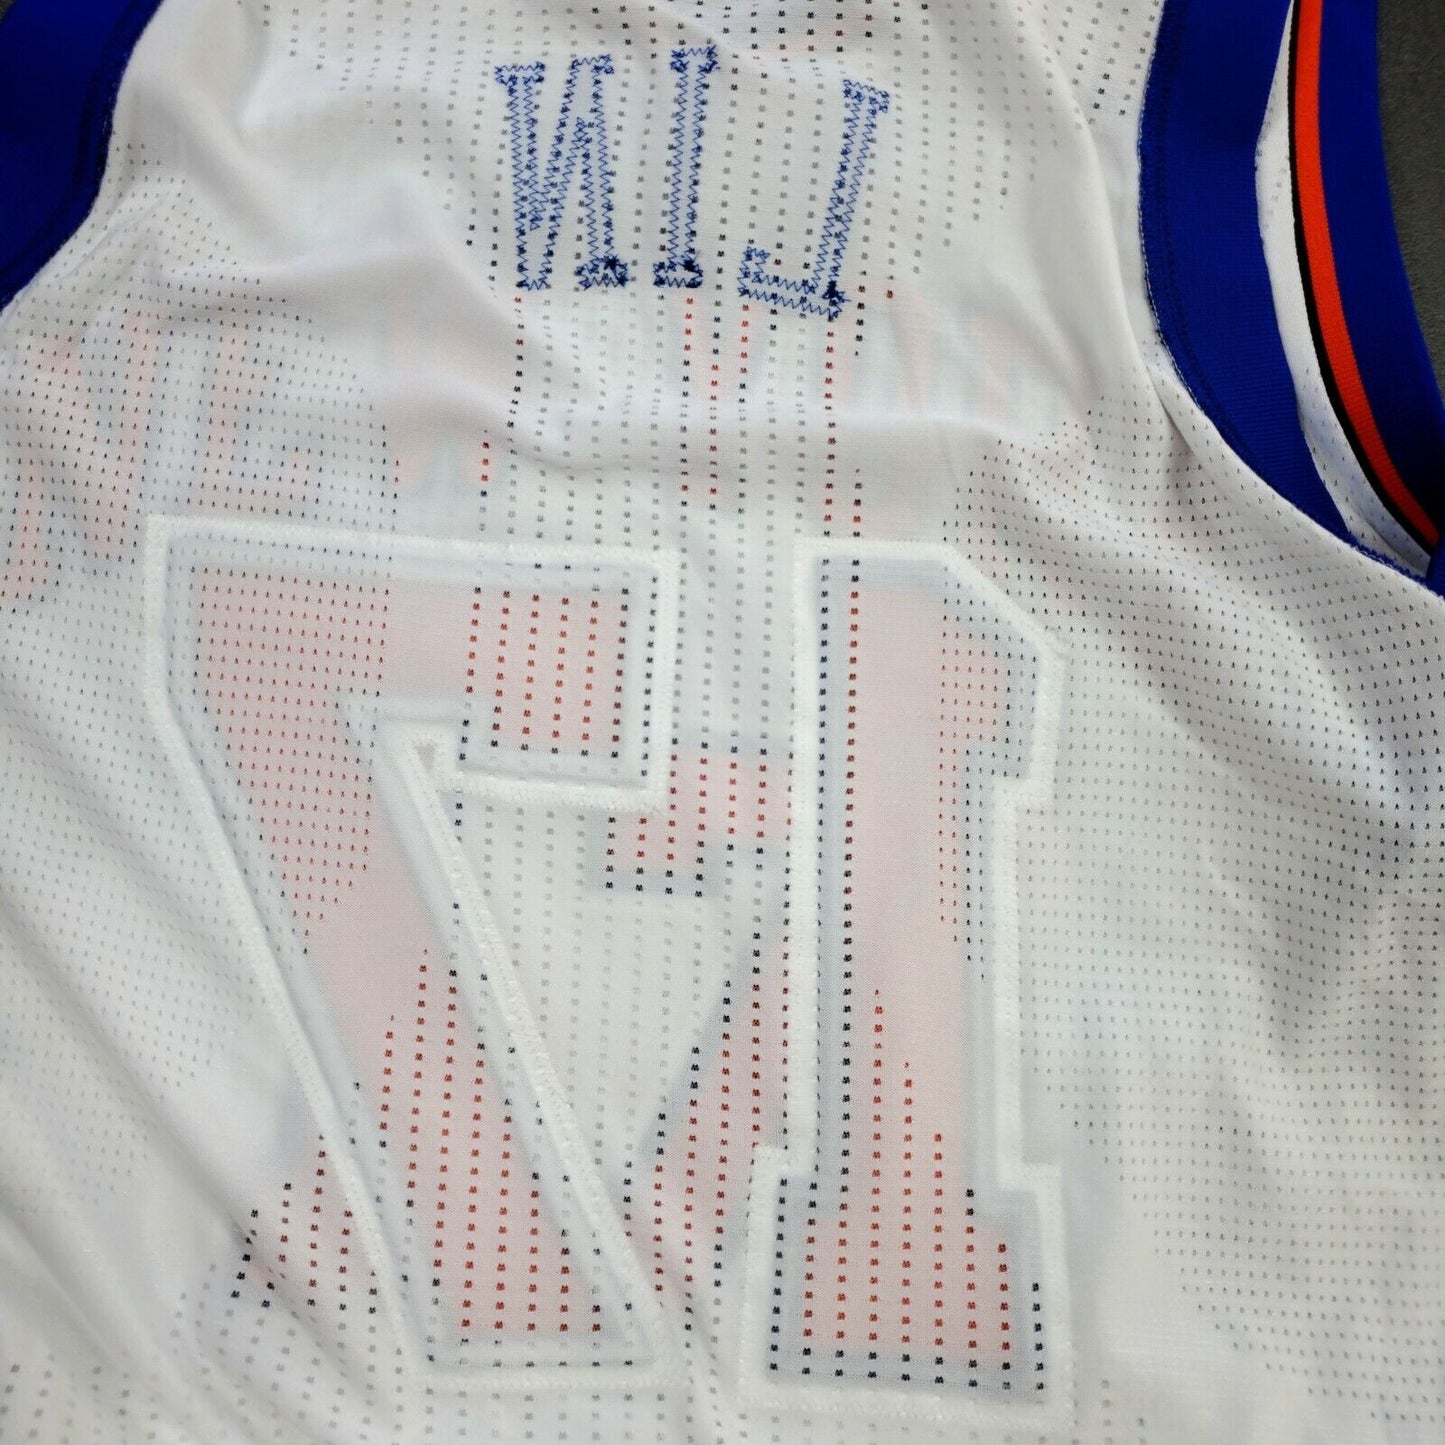 100% Authentic Jeremy Lin 2011 New York Knicks Pro Cut Jersey 2XL+2"